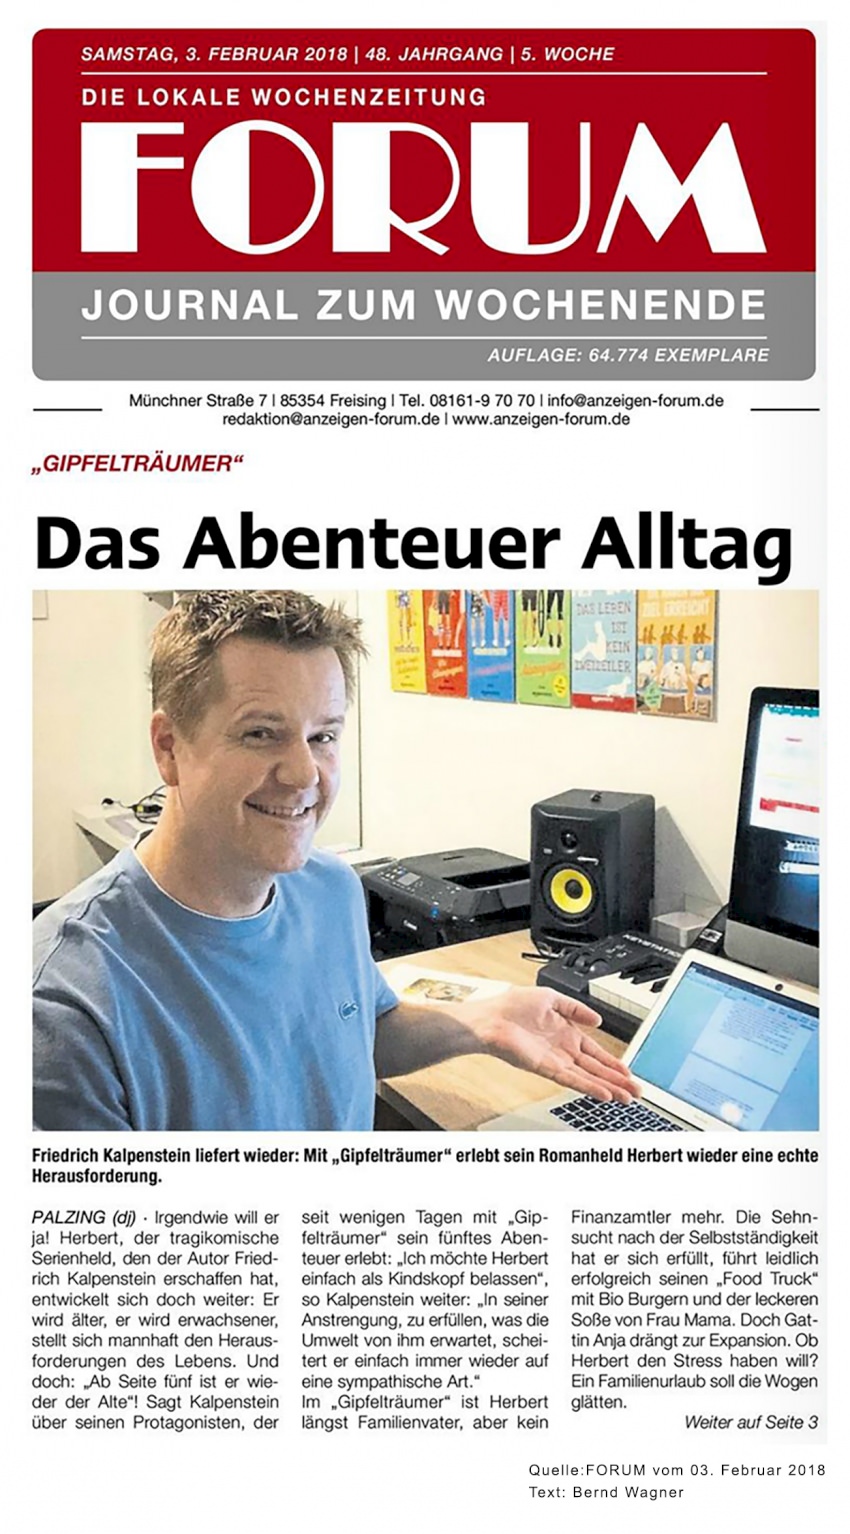 Artikel aus dem Freisinger Forum über den Autor Friedrich Kalpenstein. Auf dem Bild sitzt der Autor an seinem Schreibtisch und deutet auf den Bildschirm seines Computers.